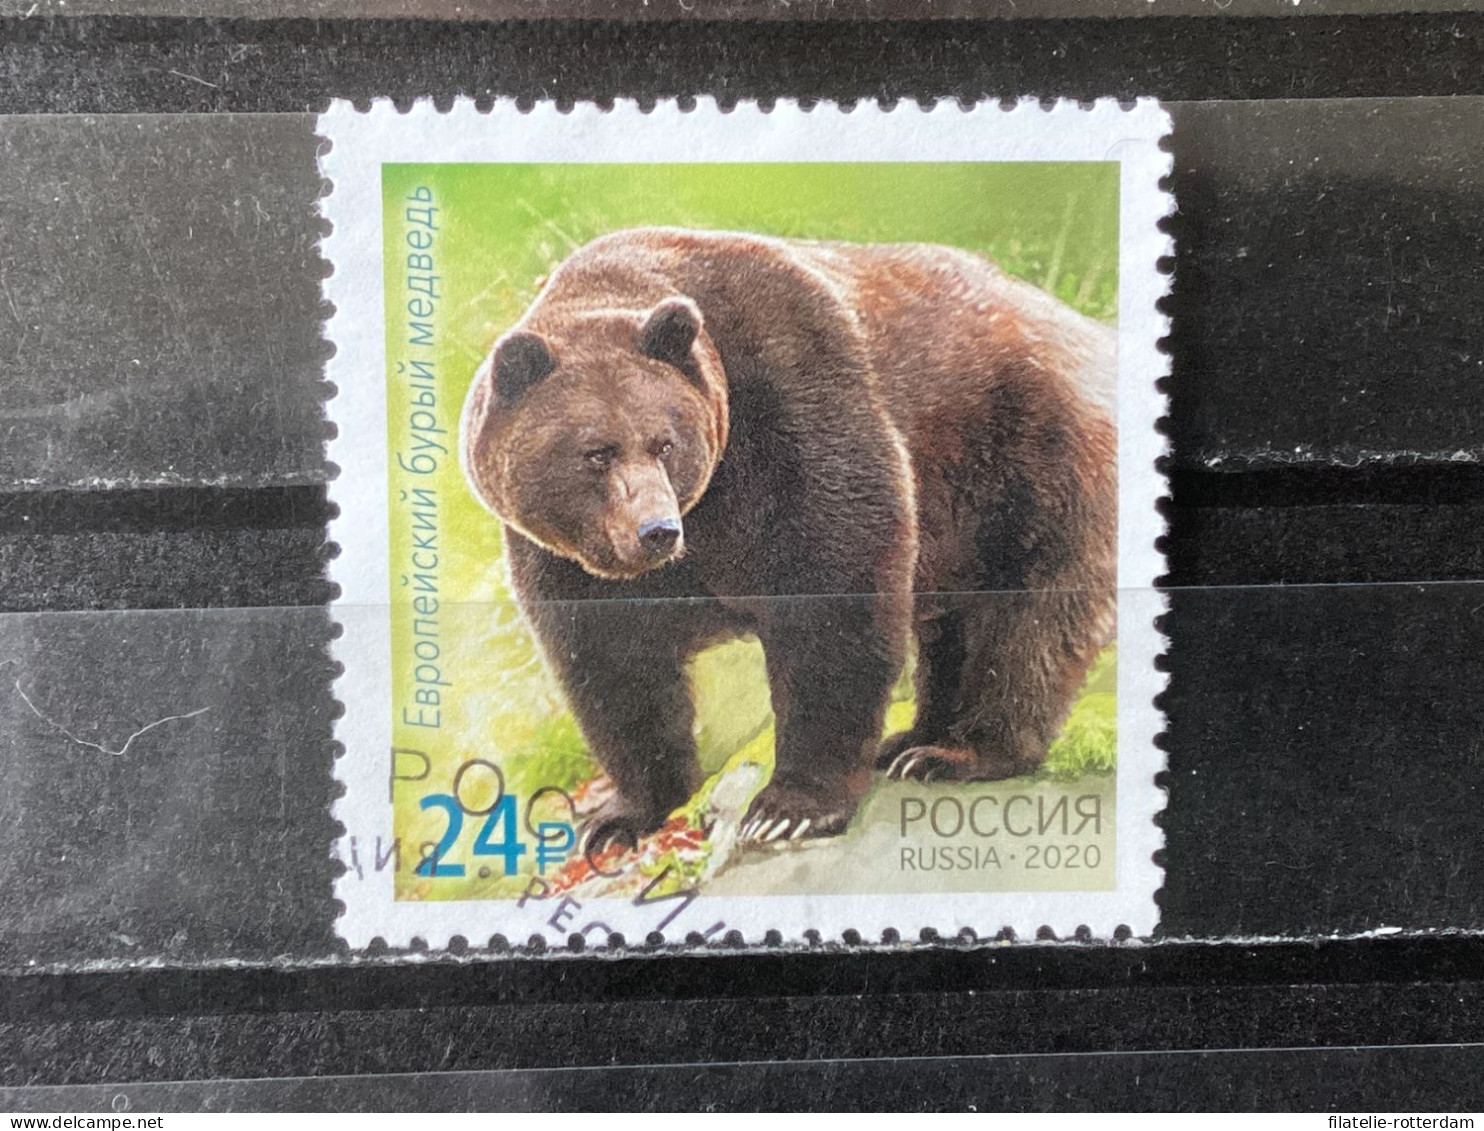 Russia / Rusland - Bears (24) 2020 - Gebraucht